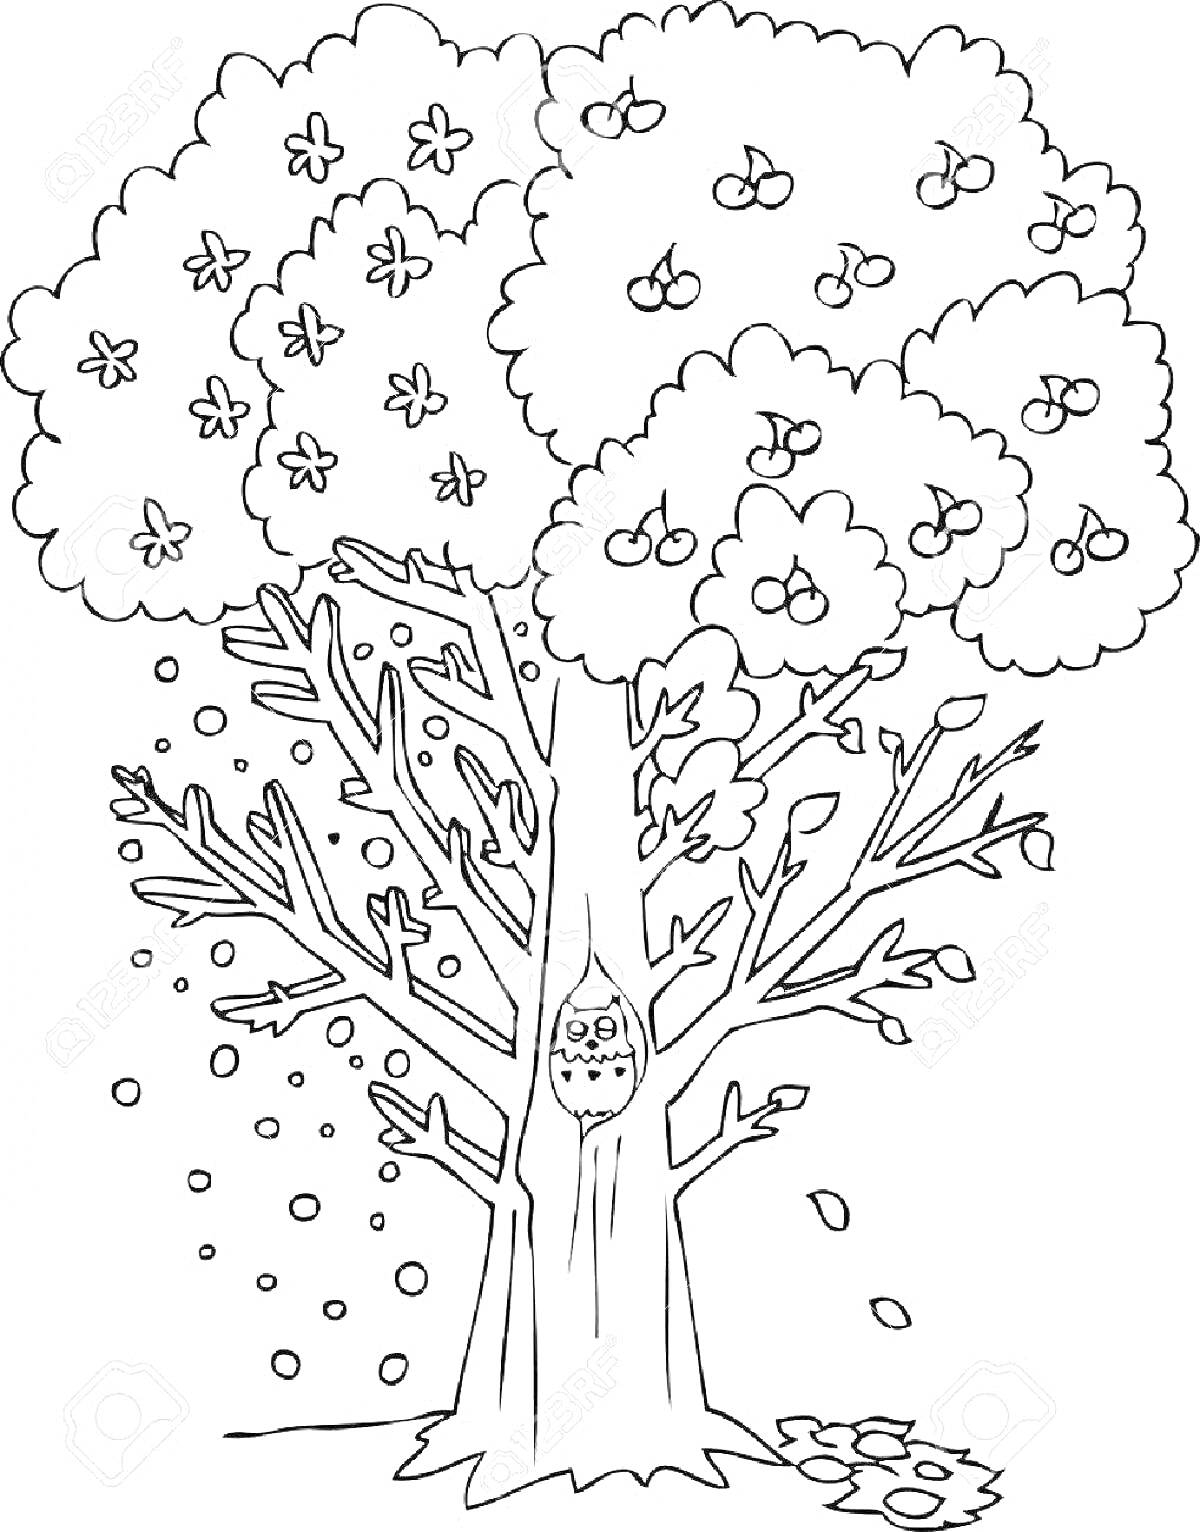 Раскраска дерево с цветами, яблоками, голыми ветвями и совой